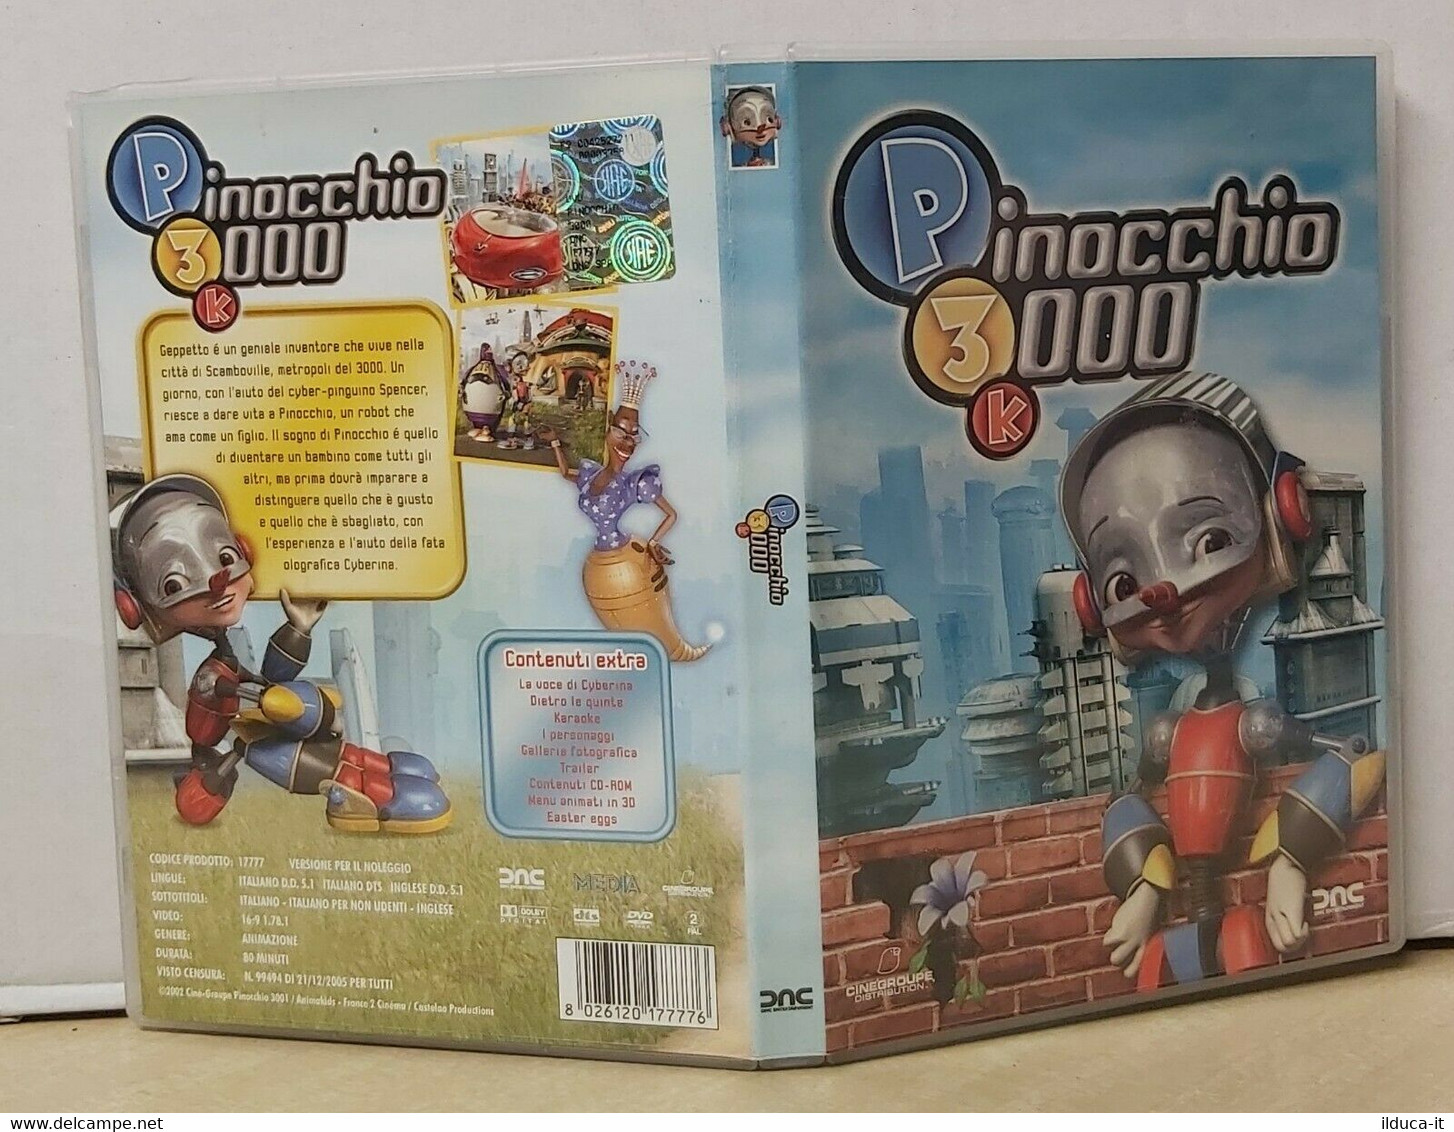 00111 DVD - PINOCCHIO 3000 K - DNC 2002 - Cartoons